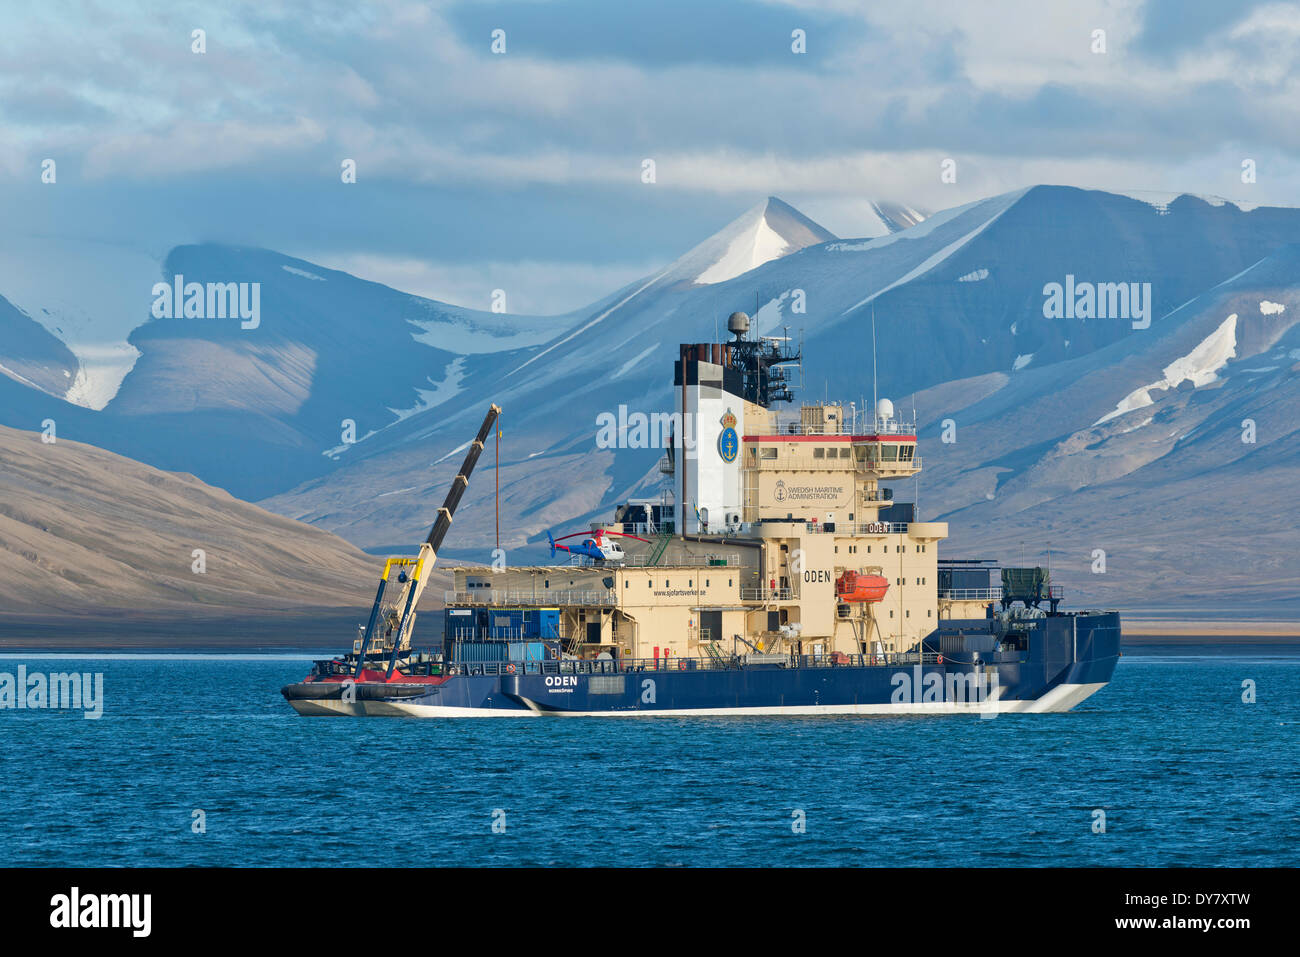 Oden, schwedische Forschungsschiff und Eisbrecher, Isfjorden, Longyearbyen, Svalbard-Archipel Spitzbergen Insel Stockfoto